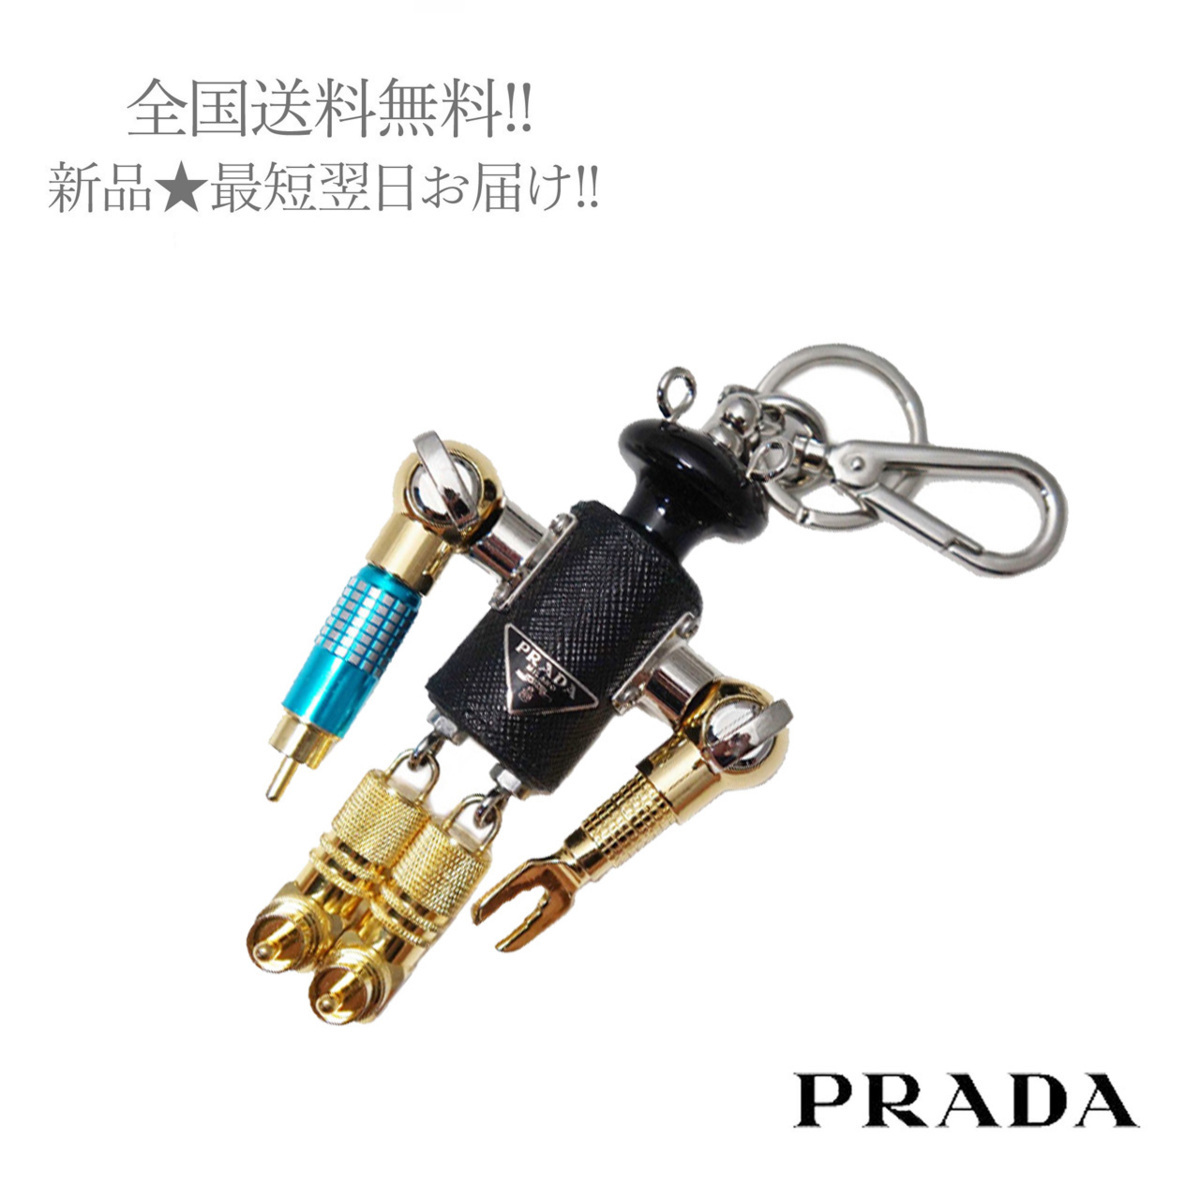 3020円 ギフト プラダ ロボット チャーム キーホルダー PRADA 18643526